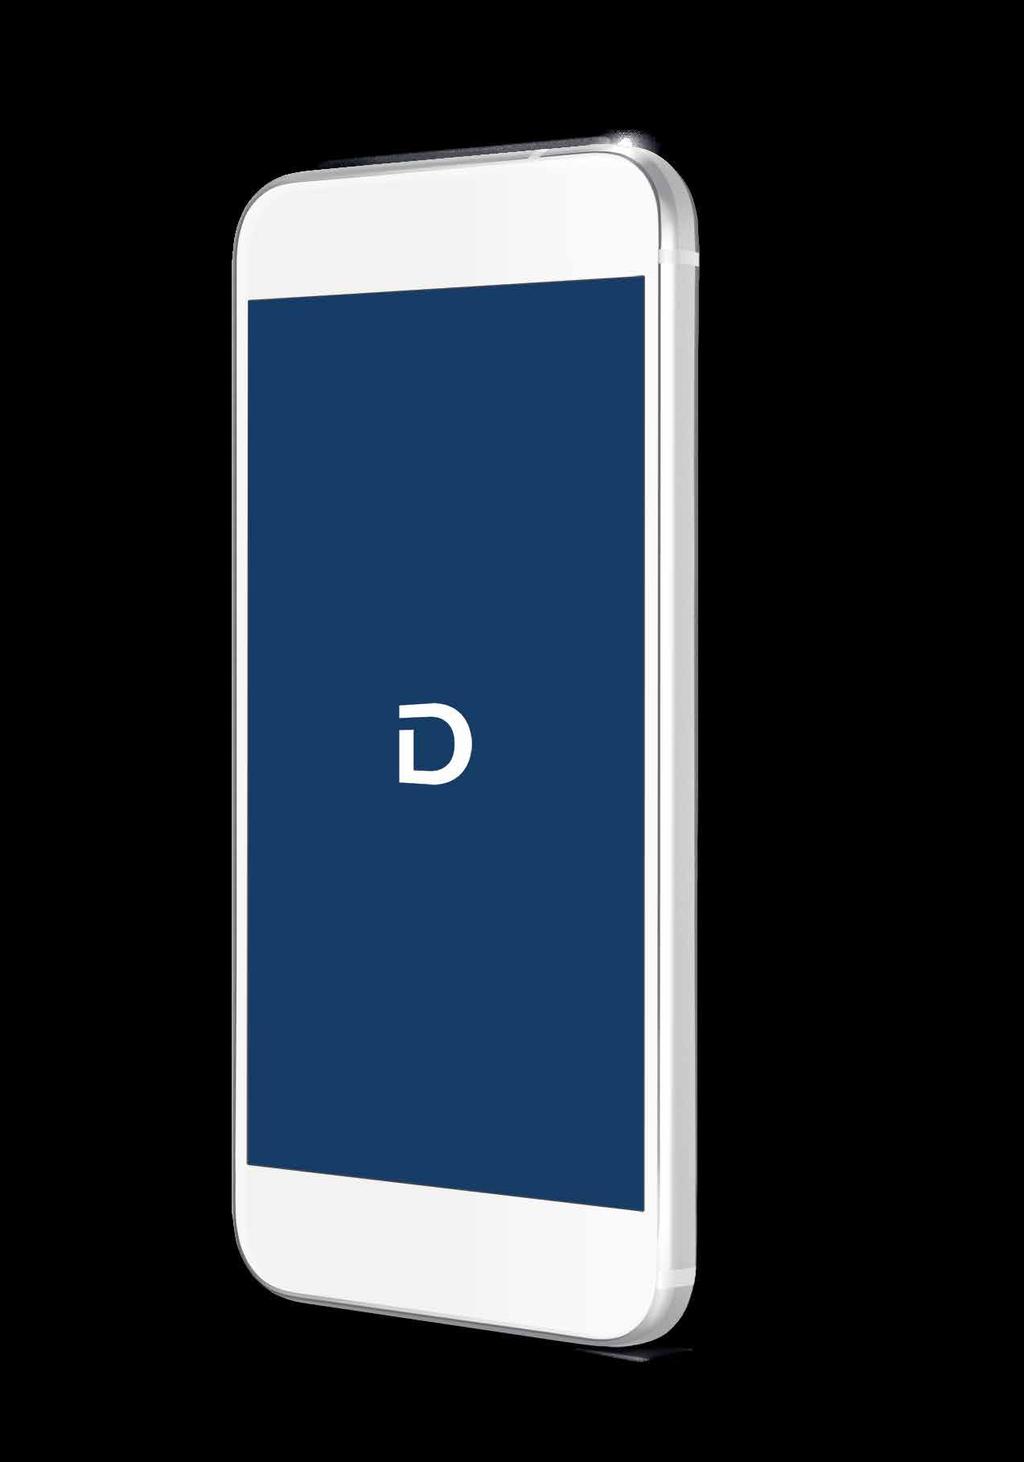 사용전유의사항 이용가능스마트폰필수조건 1. 운영체제안드로이드 OS 7.0(Nougat) 이상 2. 블루투스 4.2 버전이상 3. NFC 기능탑재 이용가능스마트폰세부모델검색은당사홈페이지 (www. hyundai.com) 에고객서비스 현대디지털키소개페이지를참조바랍니다.